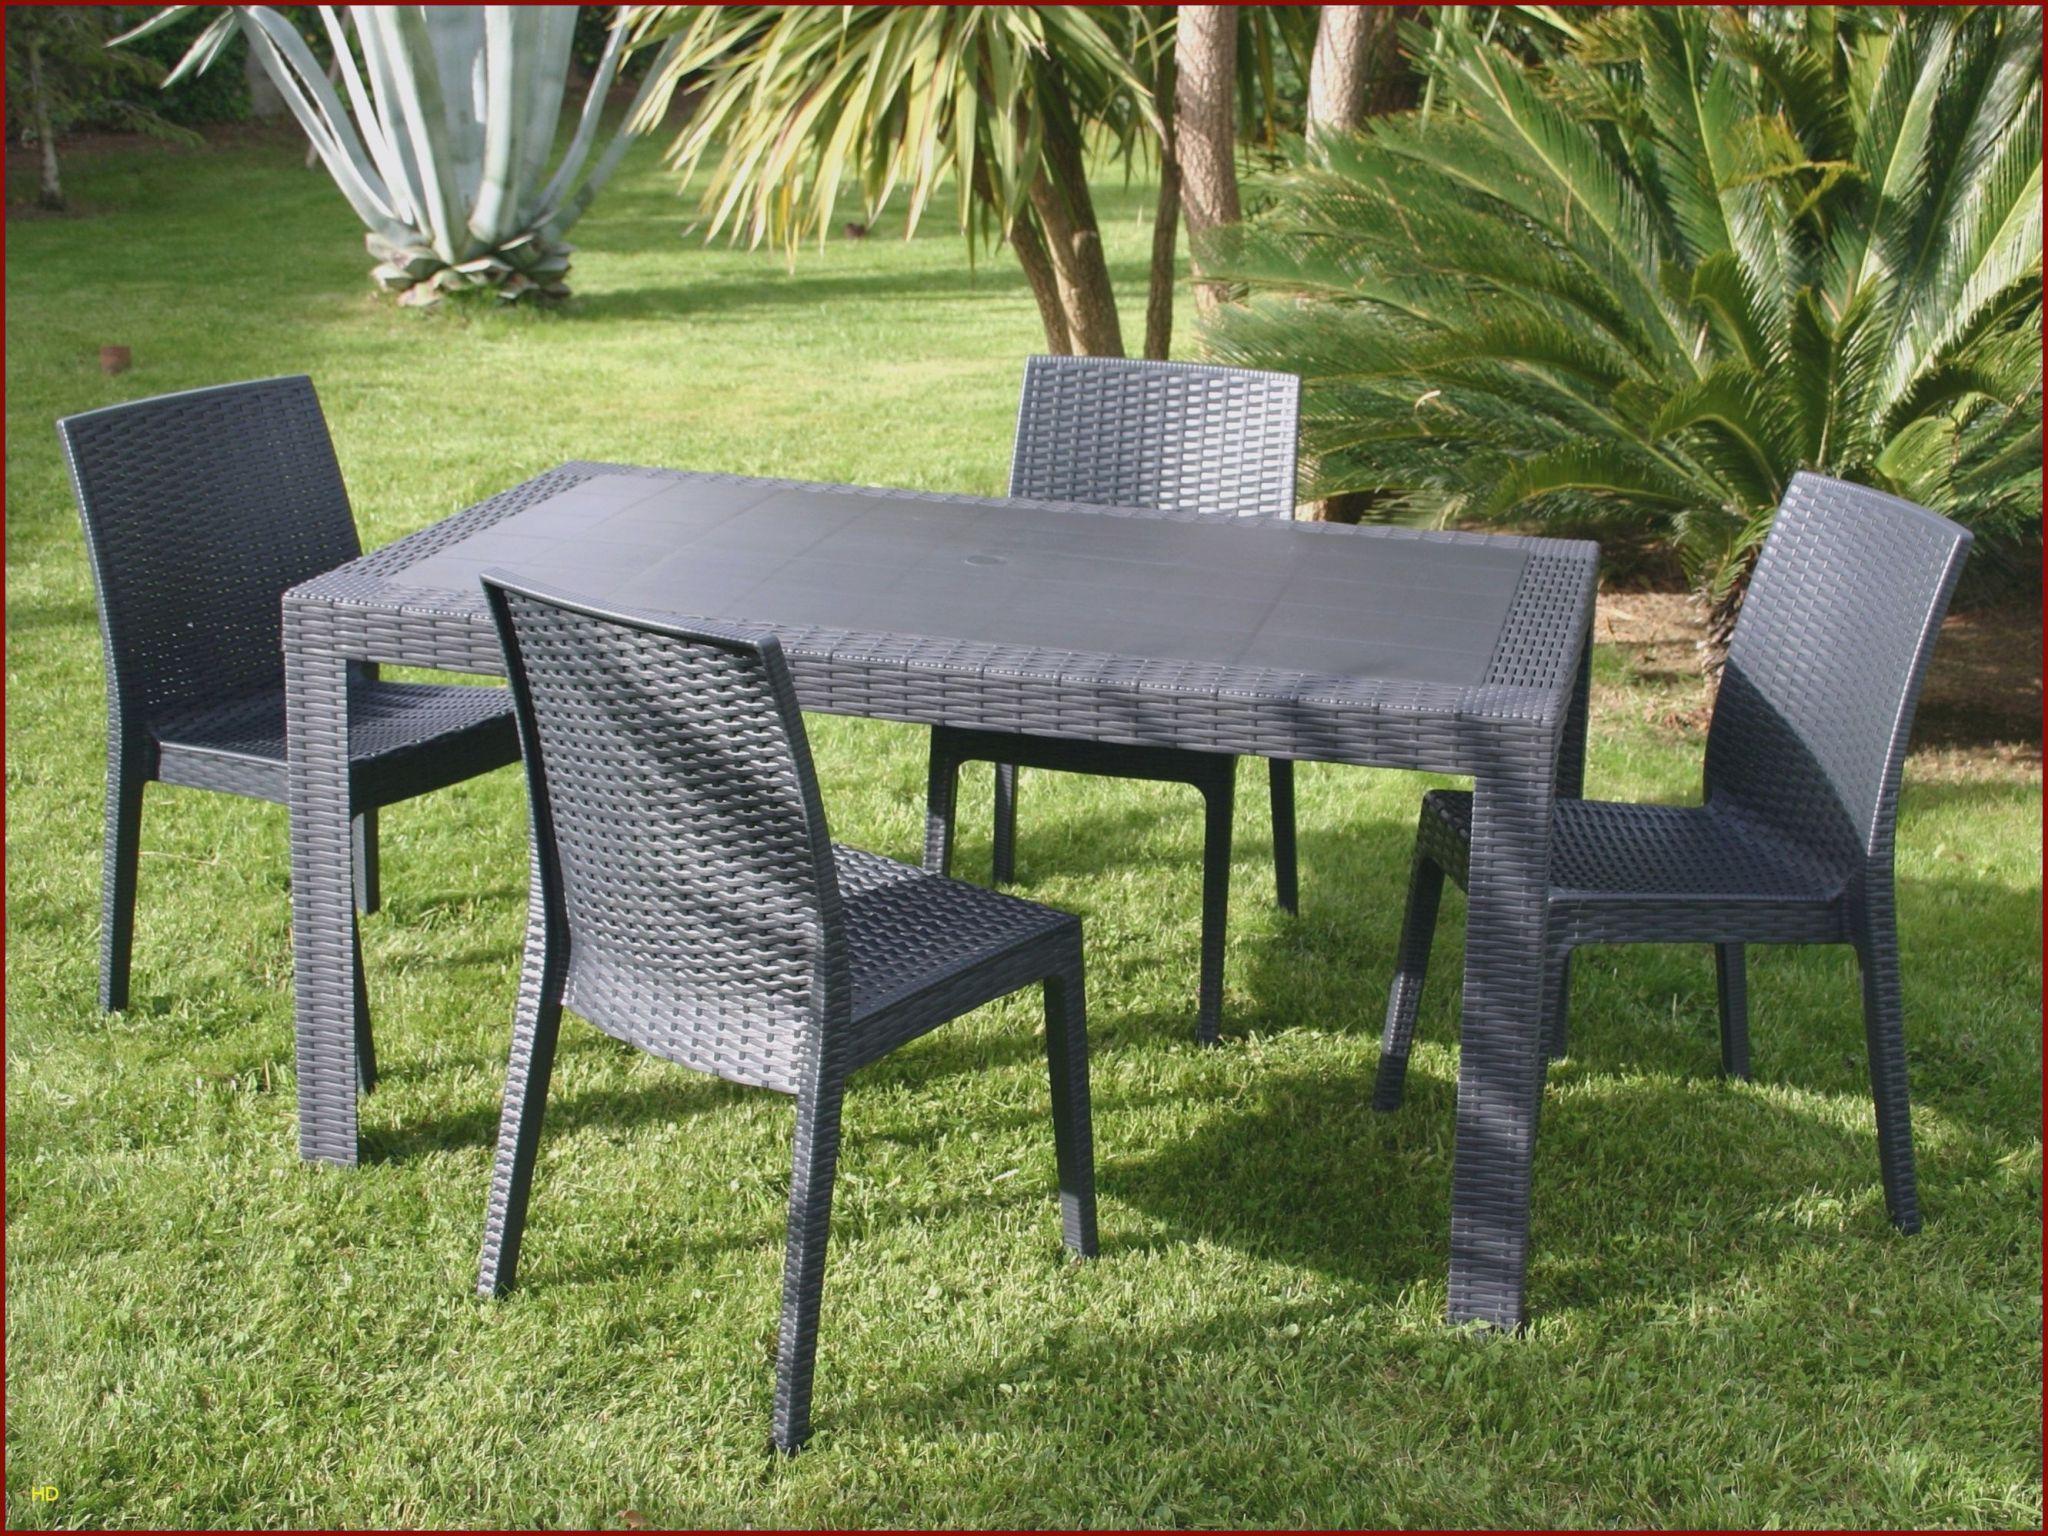 Table Basse De Jardin En Bois Inspirant Chaises Luxe Chaise Ice 0d Table Jardin Resine Lovely